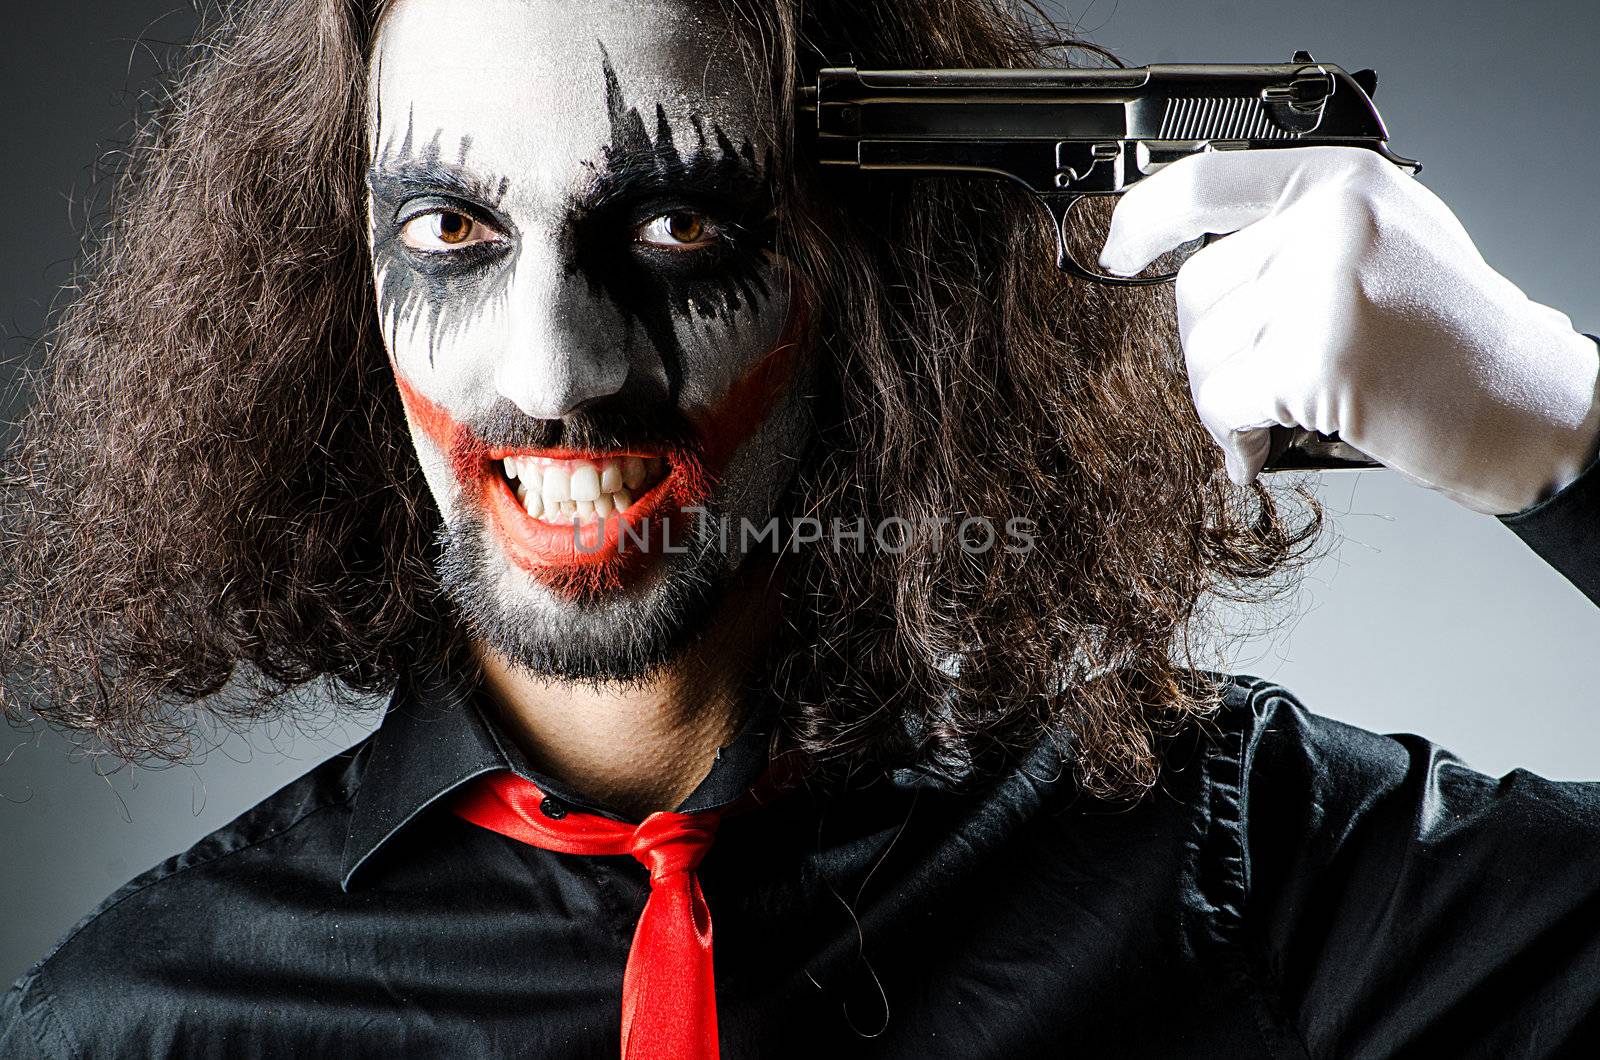 Evil clown with gun in dark room by Elnur